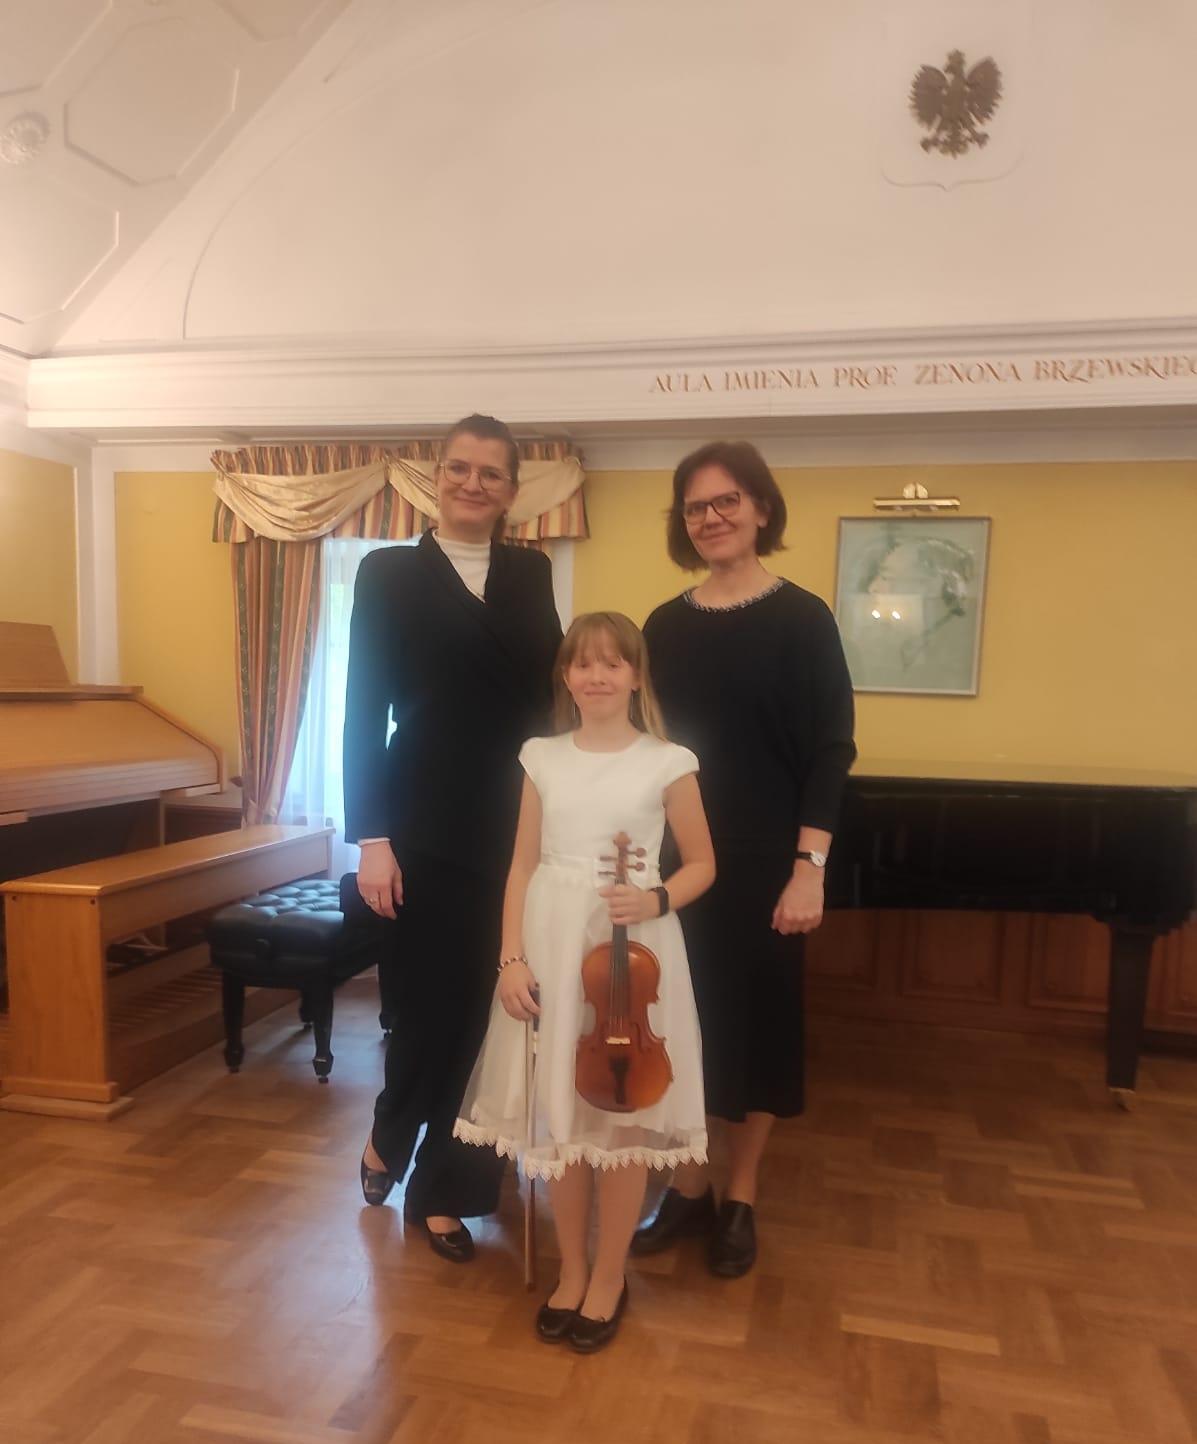 Uczennica w białej sukience trzymająca skrzypce, a po jej bokach nauczycielki. Z tyłu widoczny fortepian oraz organy.